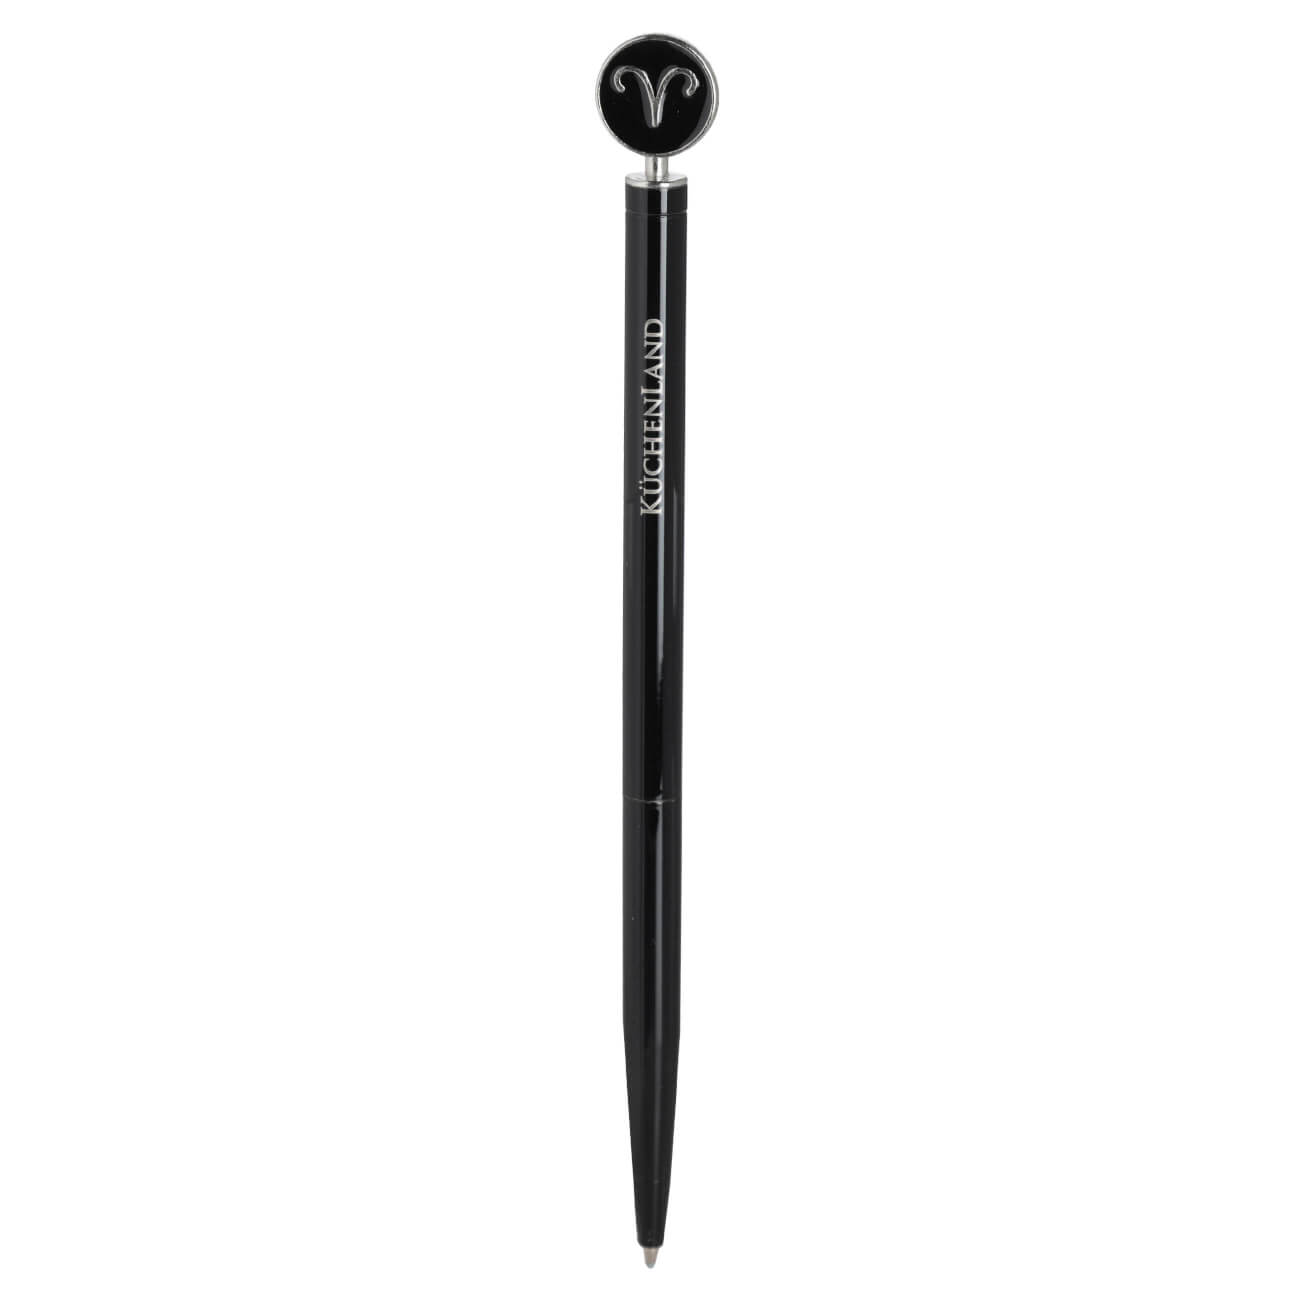 Ручка шариковая, 15 см, с фигуркой, сталь, черно-серебристая, Овен, Zodiac шариковая автоматическая ручка expert complete